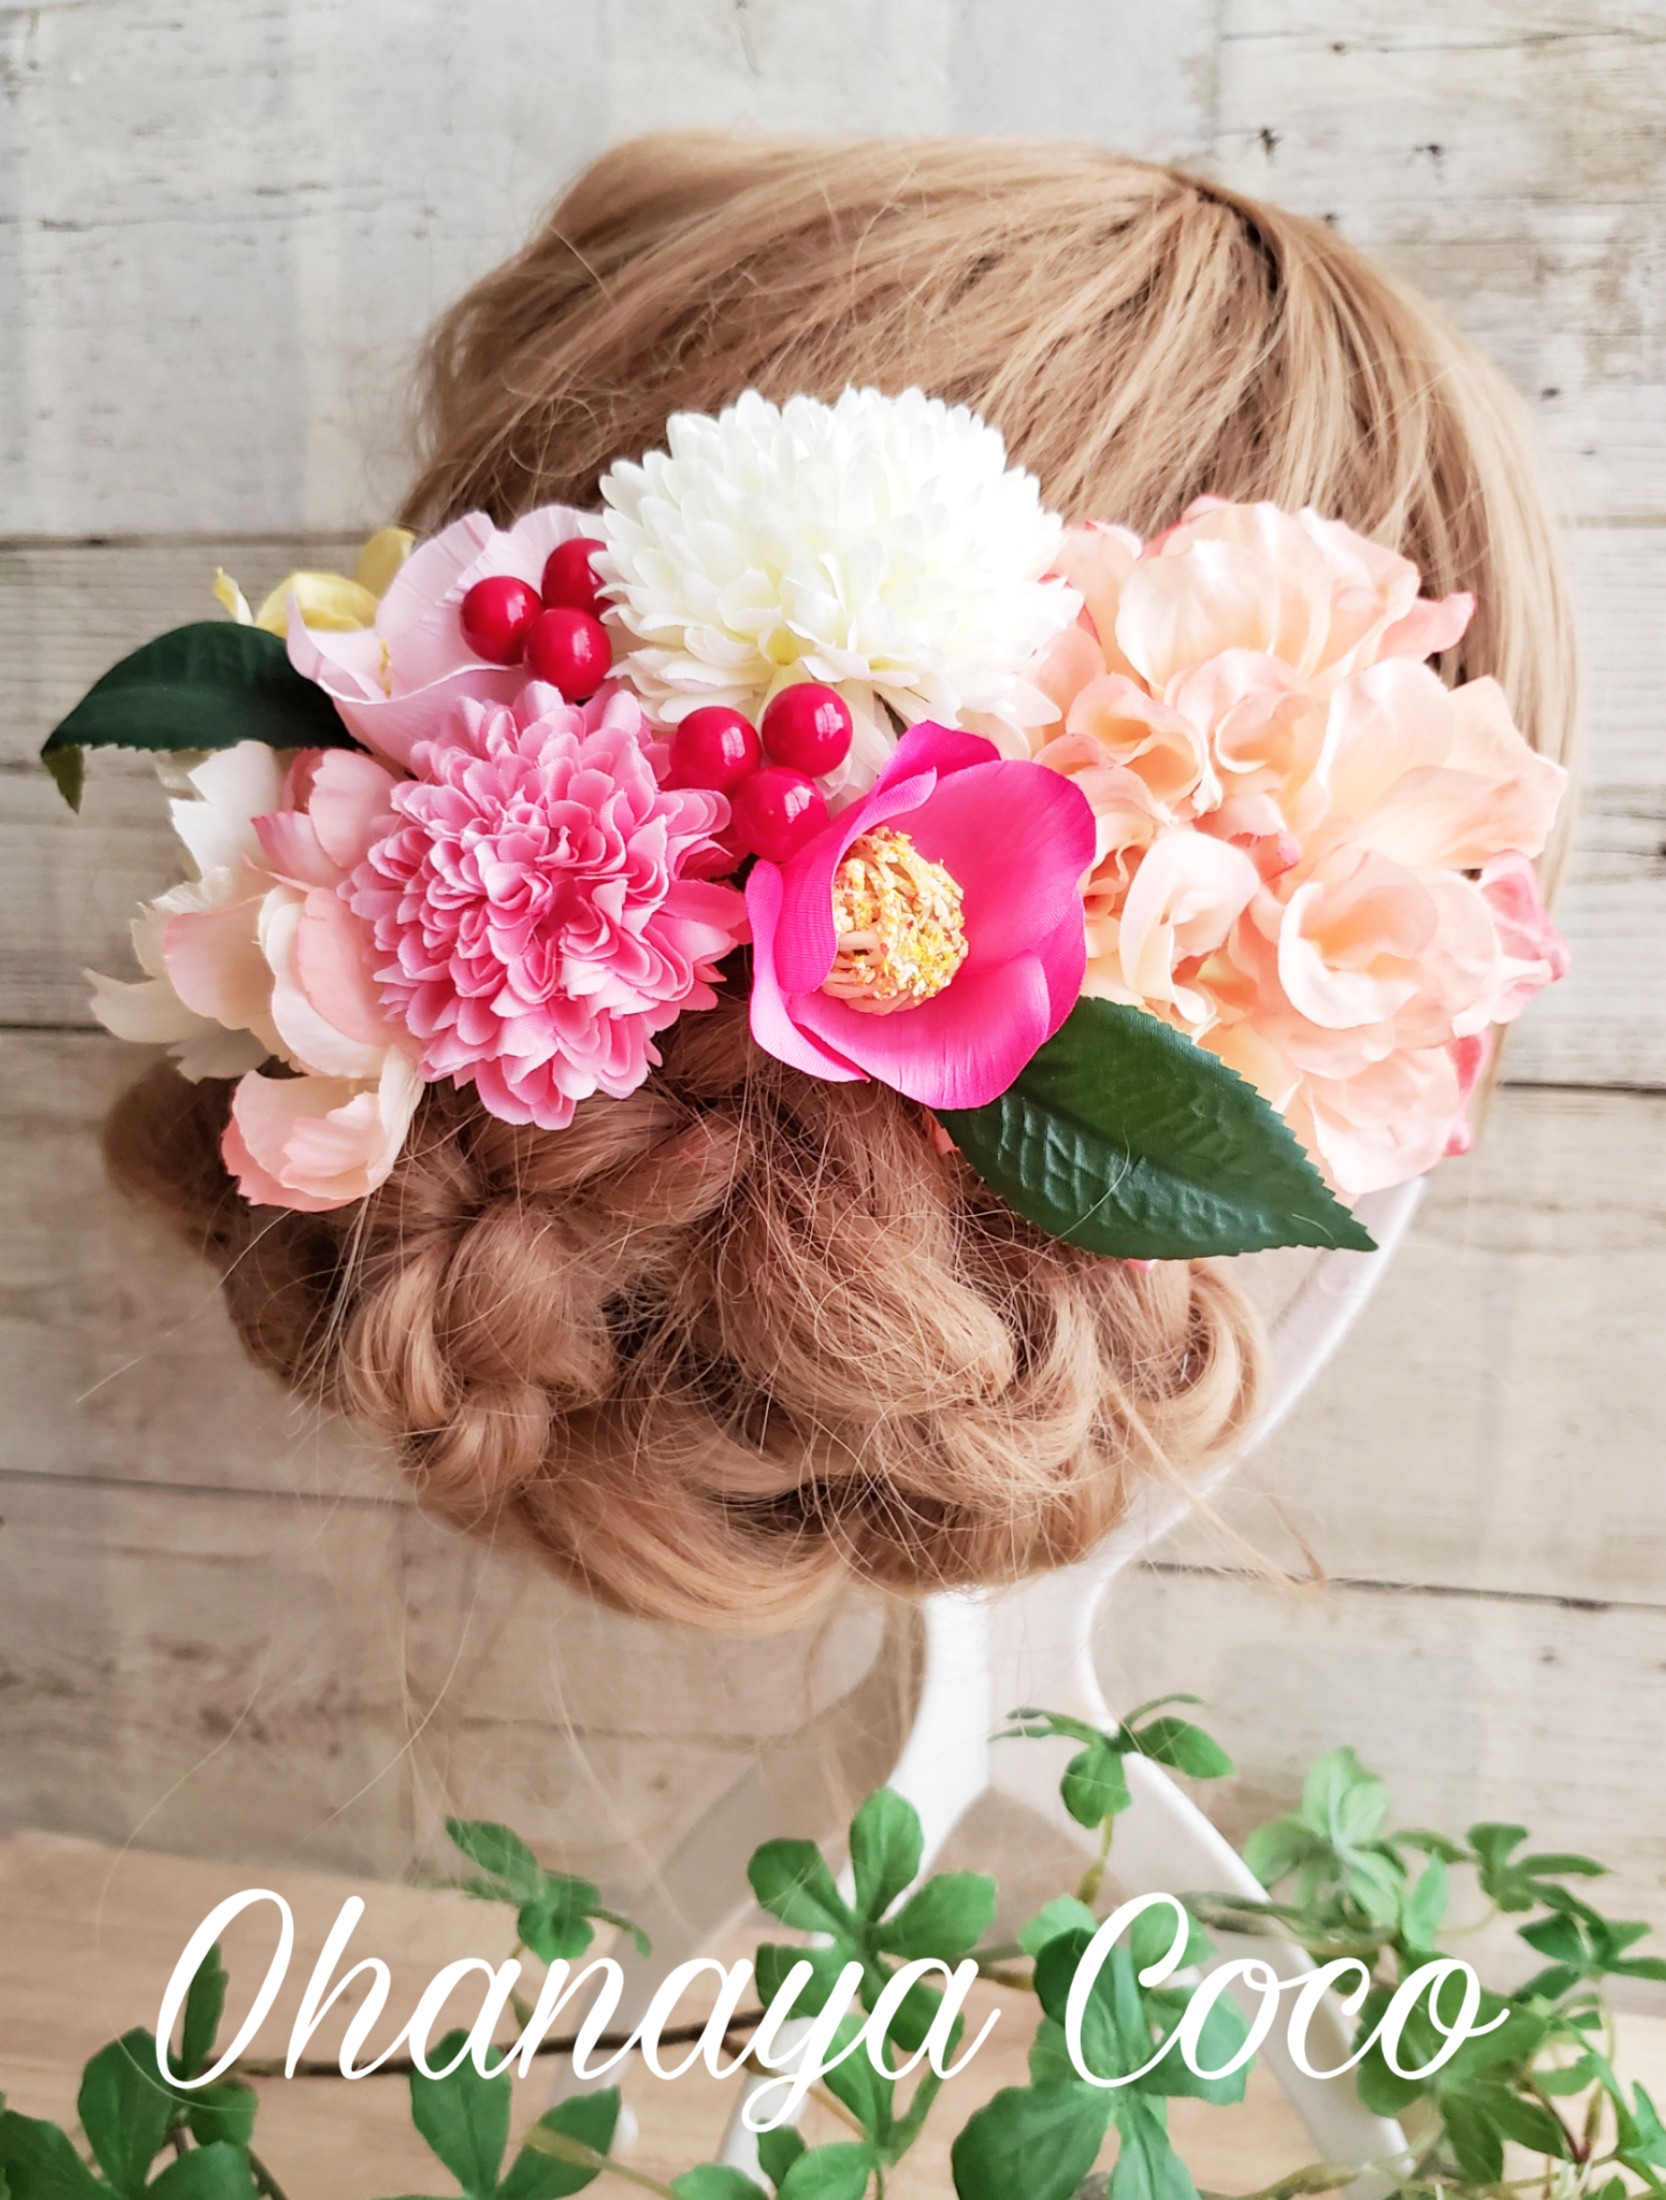 甘花 サーモンピンクの髪飾り10点set No561 Iichi ハンドメイド クラフト作品 手仕事品の通販